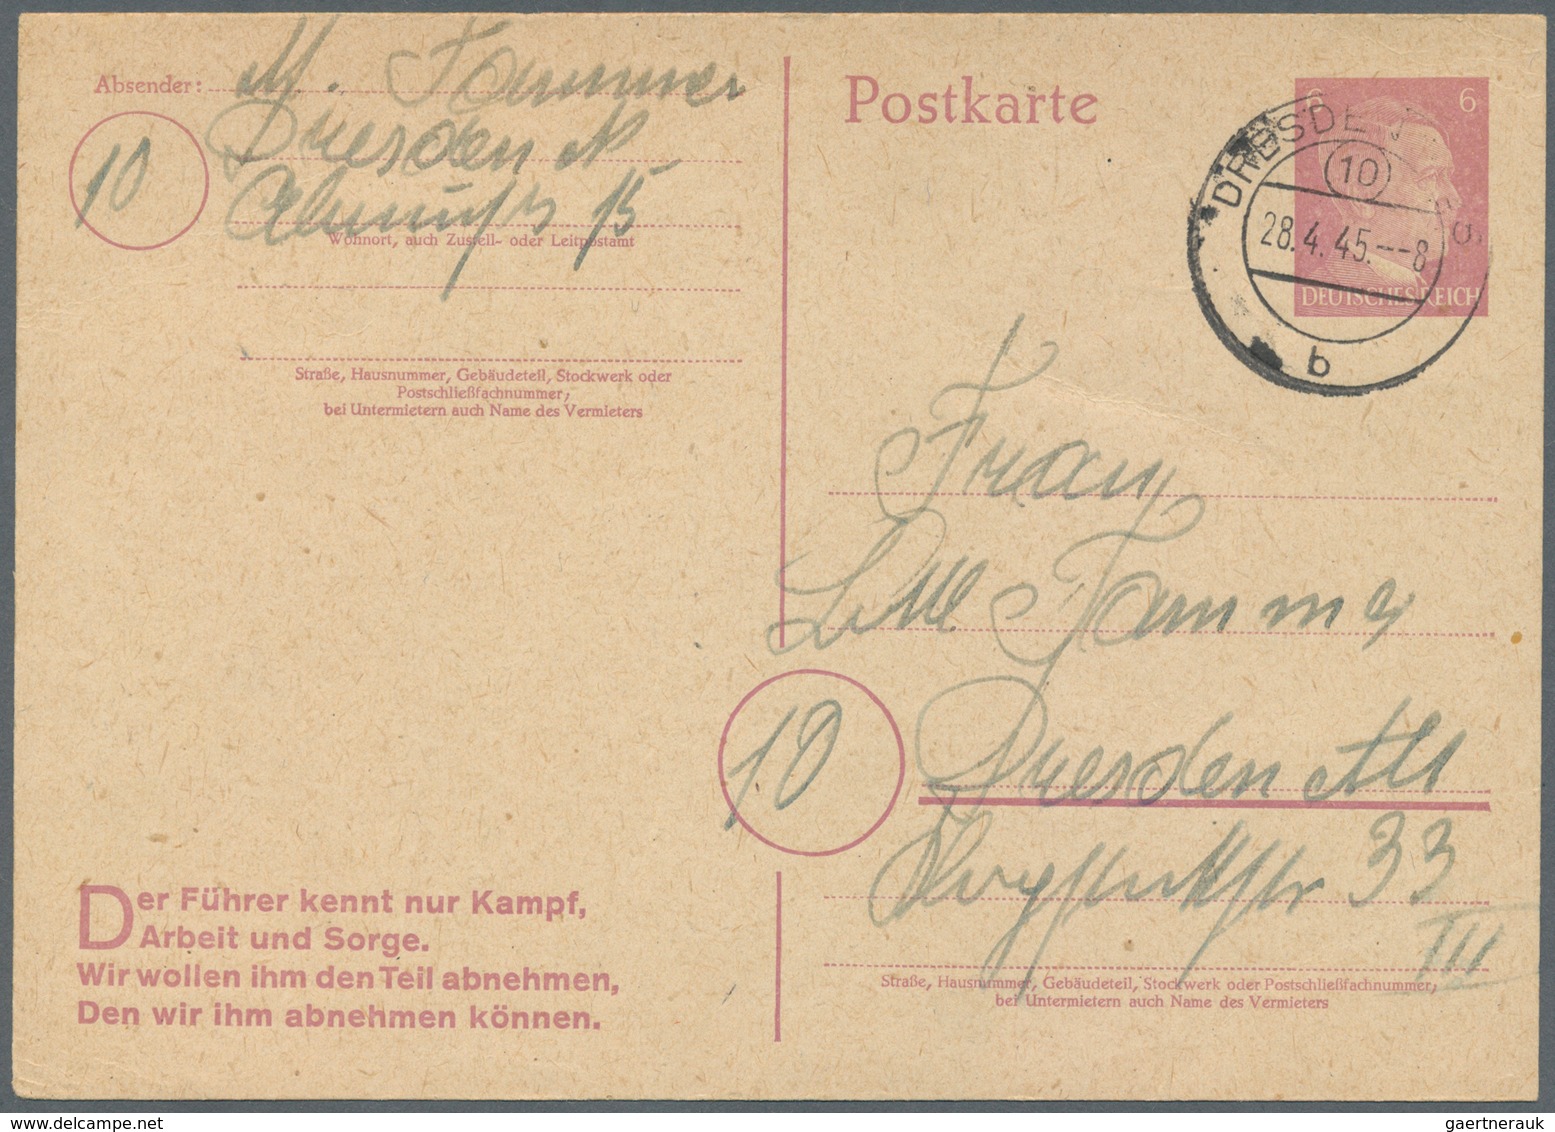 31809 Deutsches Reich - Besonderheiten: 1933/1945, Belege und Dokumente abseits der reinen Markenfrankatur